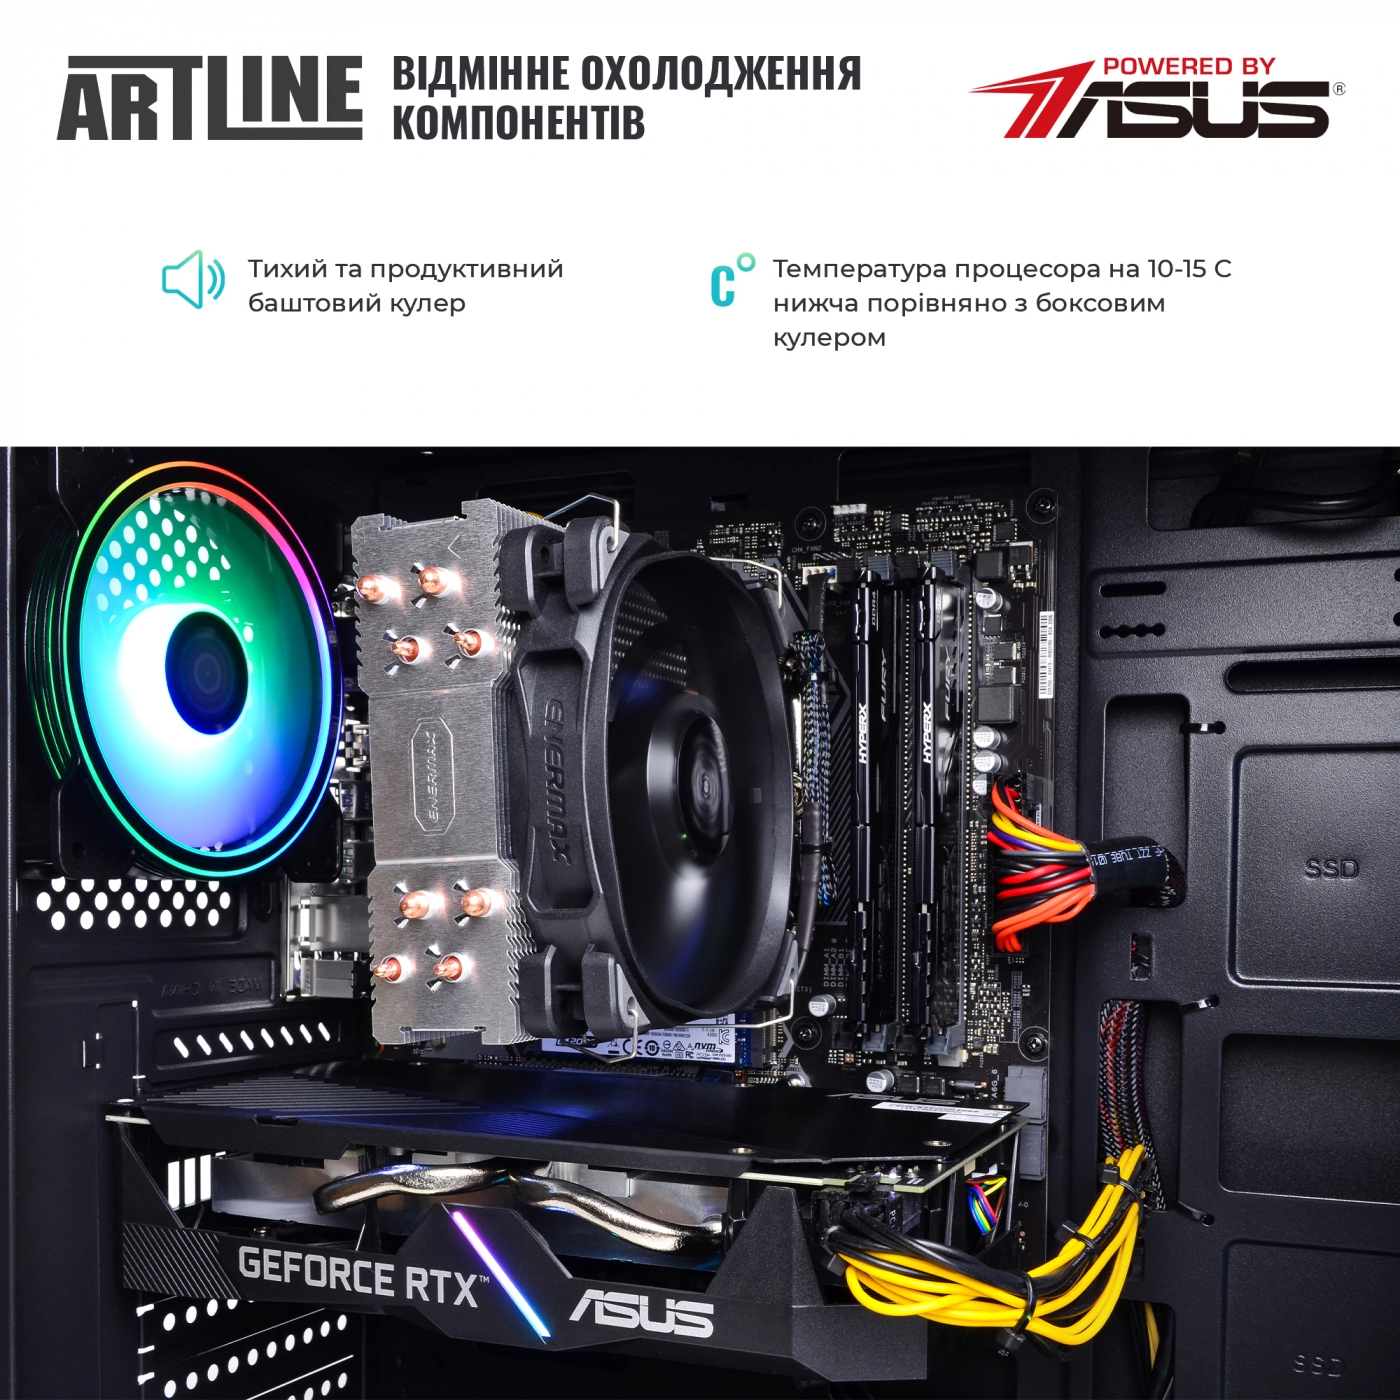 Купить Компьютер ARTLINE Gaming X57v35 - фото 7